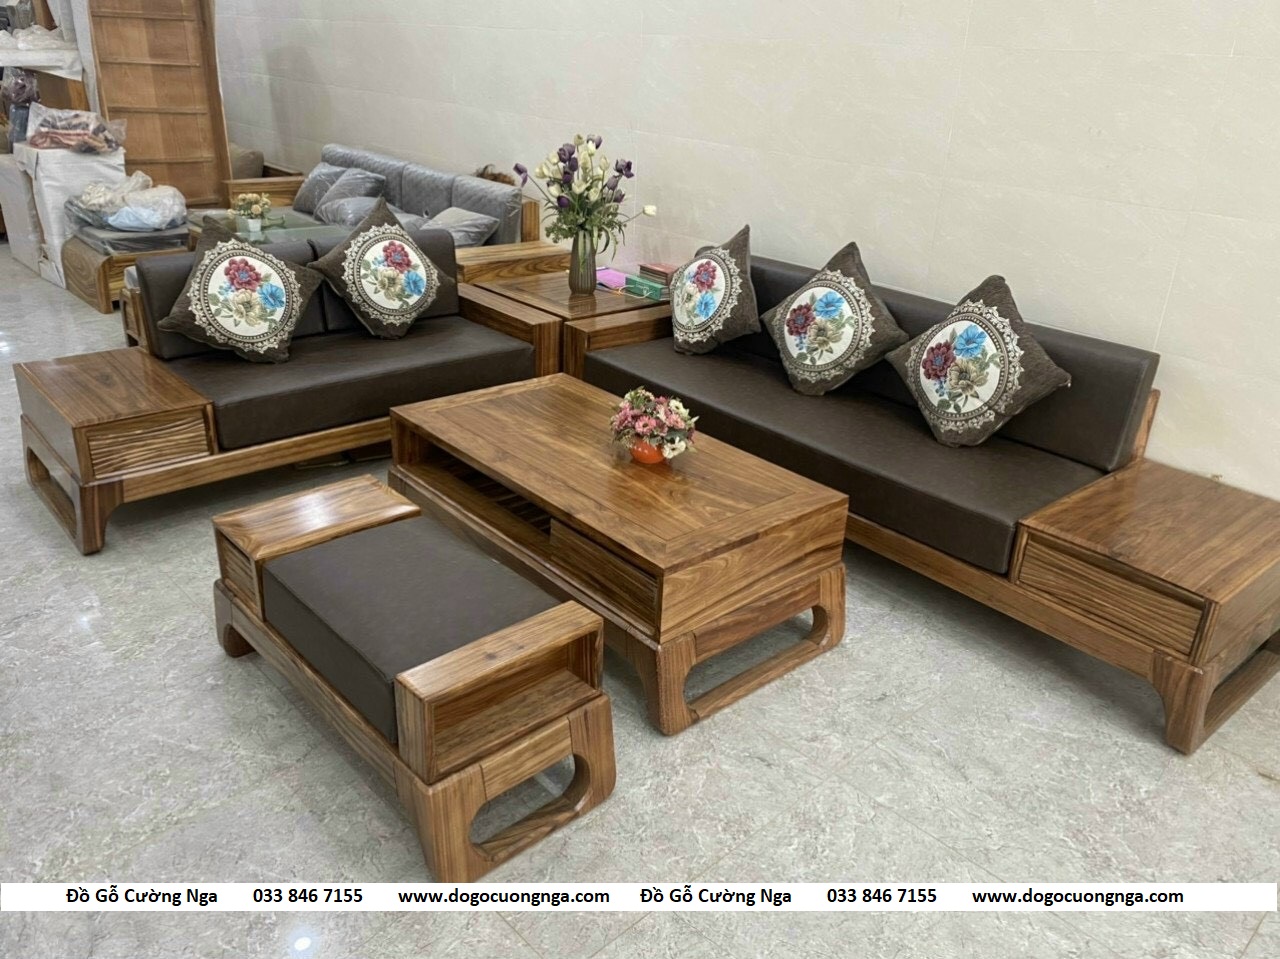 Bộ bàn ghế sofa gỗ Hương Xám 2 văng chân quỳ kèm nệm hiện đại